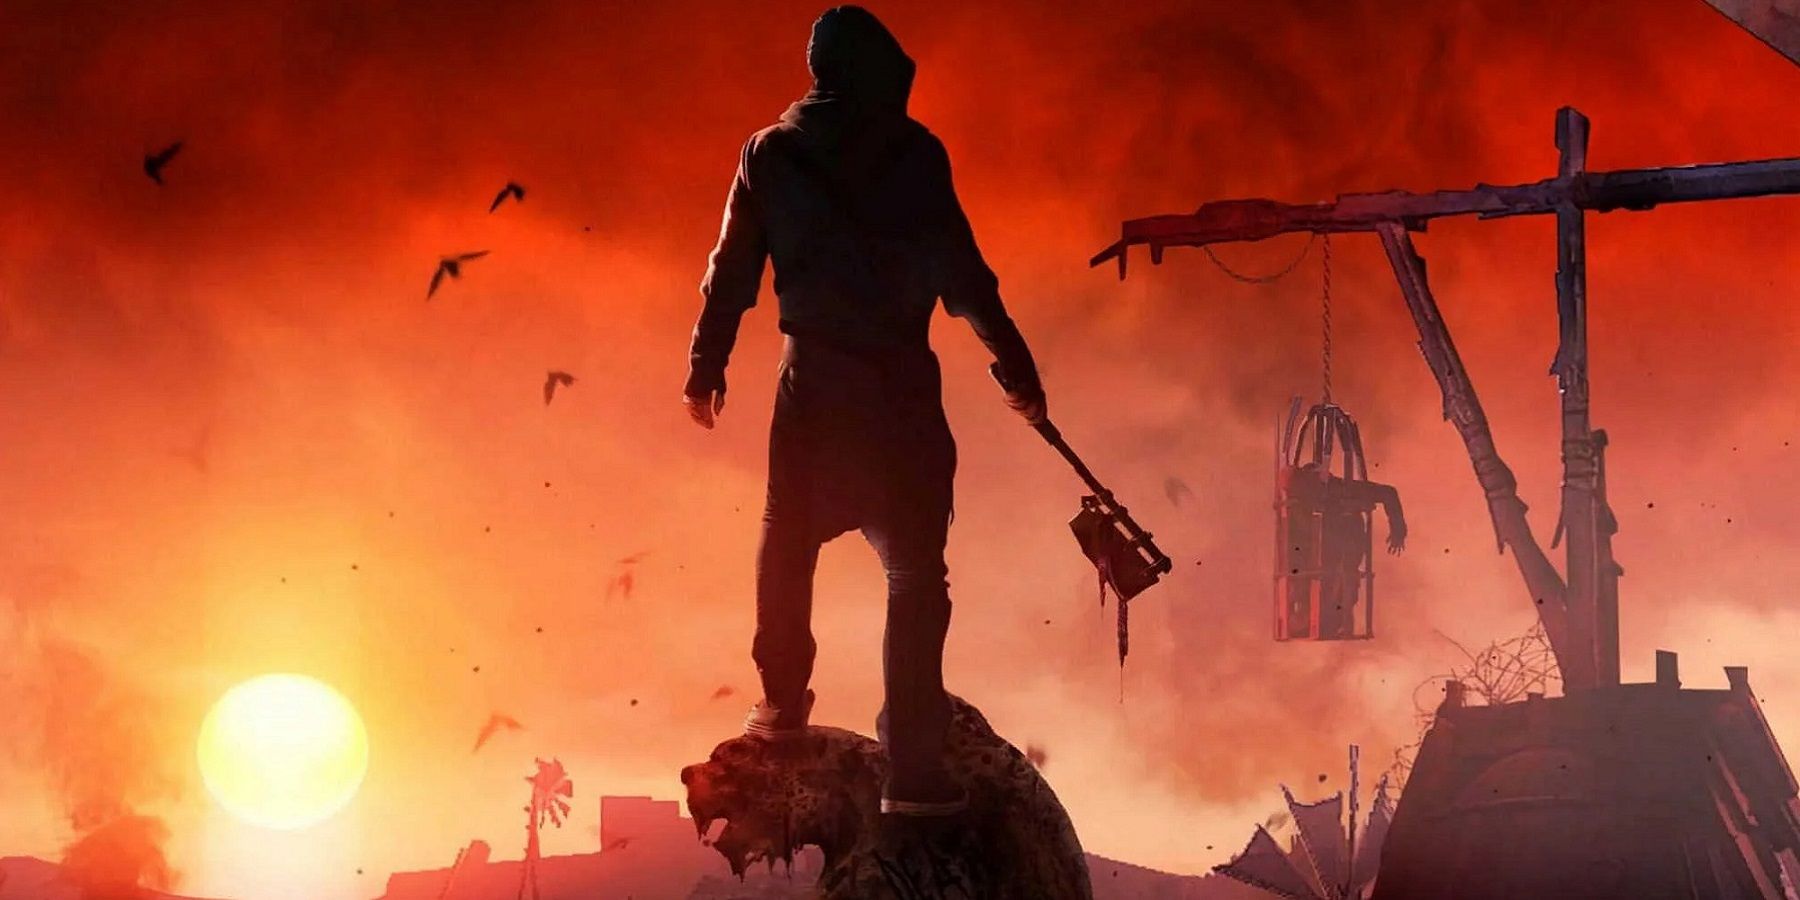 Изображение из Dying Light 2, показывающее силуэт игрока, стоящего на вершине горгульи во время заката.